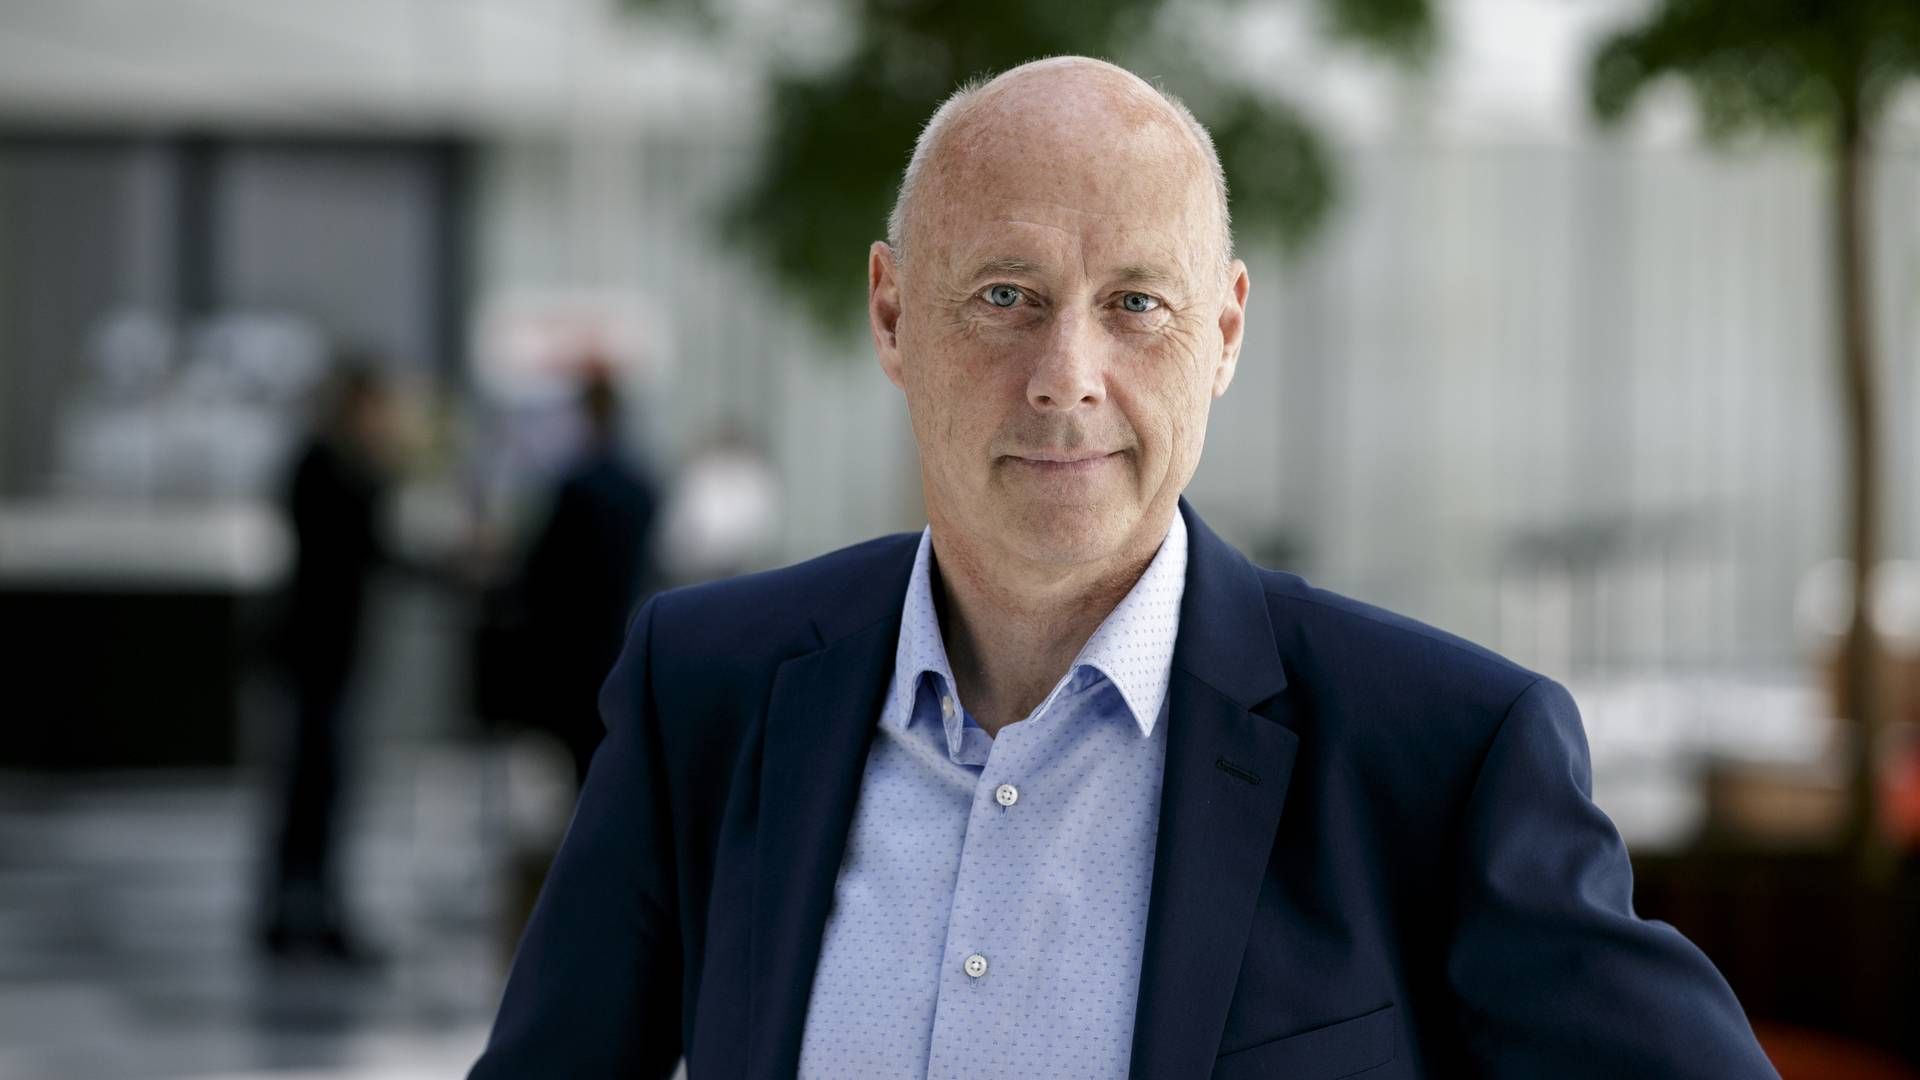 Direktør i DI Transport, Michael Svane, peger på, at en CO2-målsætning ikke siger alt om virksomheders klimaarbejde. | Foto: Hans Søndergård